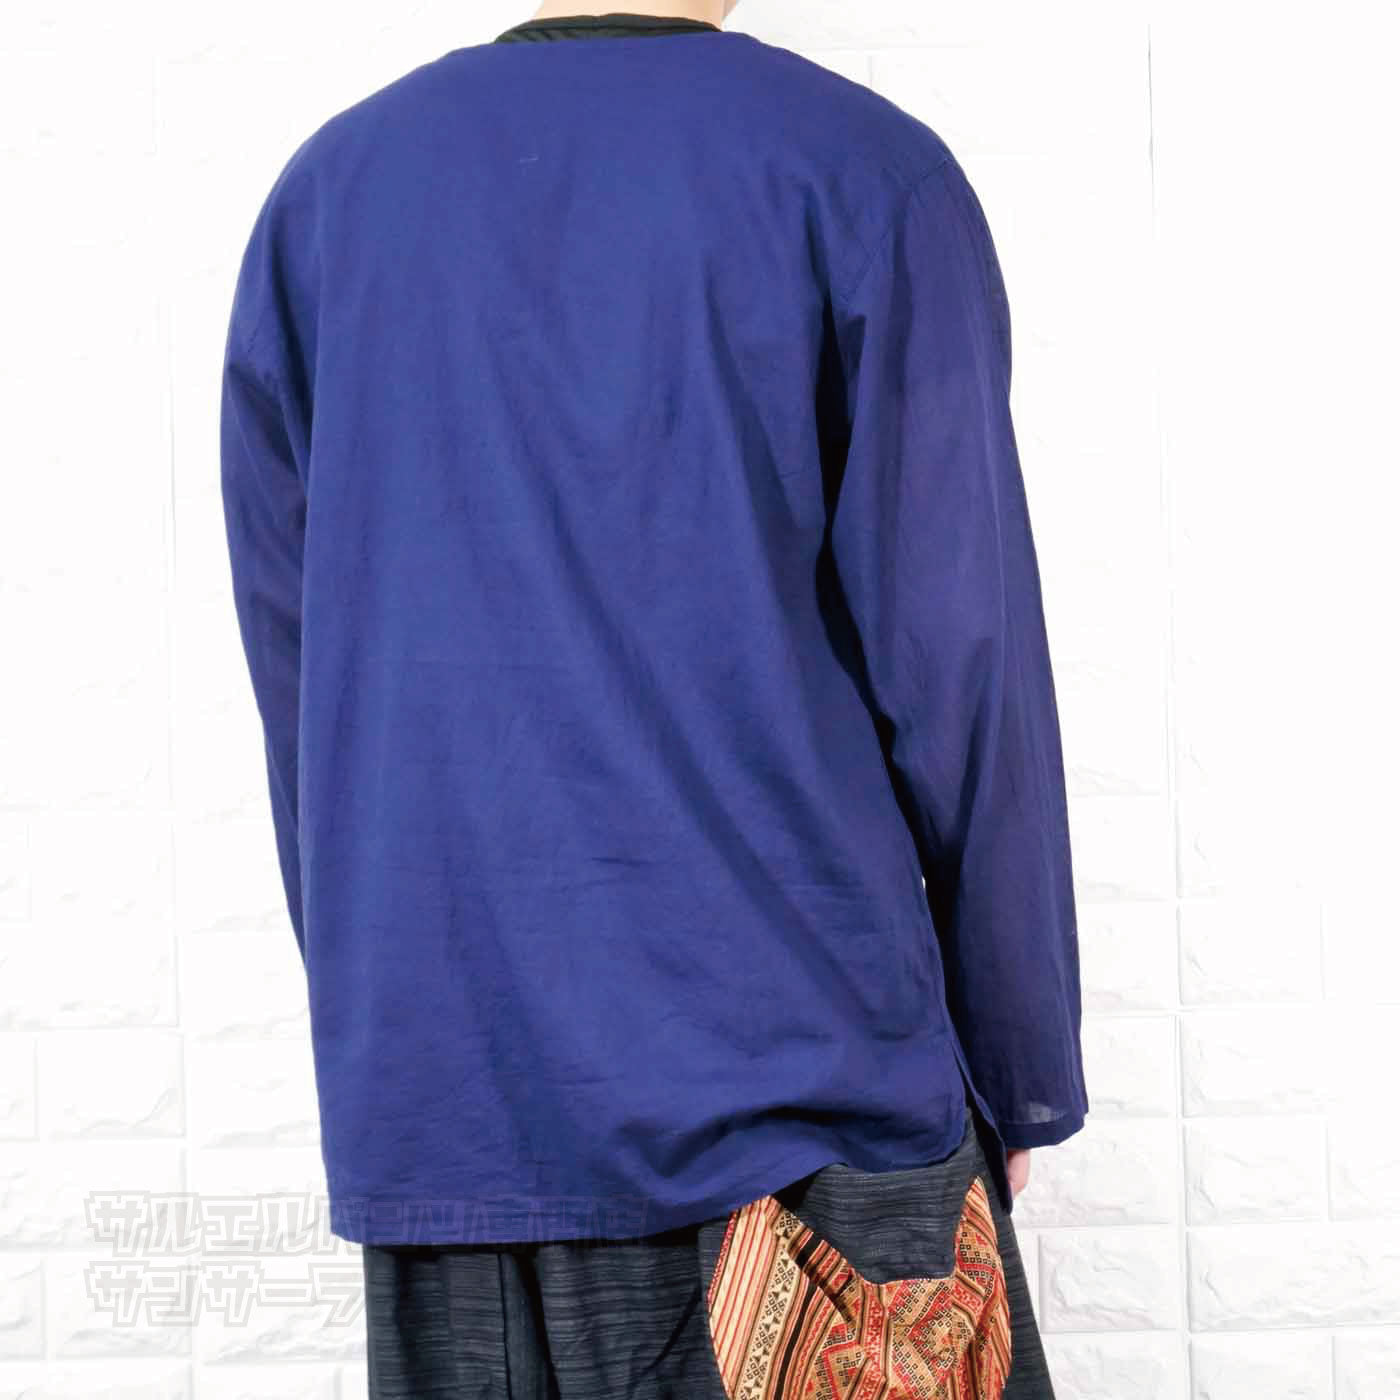 エスニック Tシャツ 長袖 クルタシャツ トップス メンズ レディース ユニセックス 渦巻き 大きめサイズ ゆったり アジアン ファッションブラック